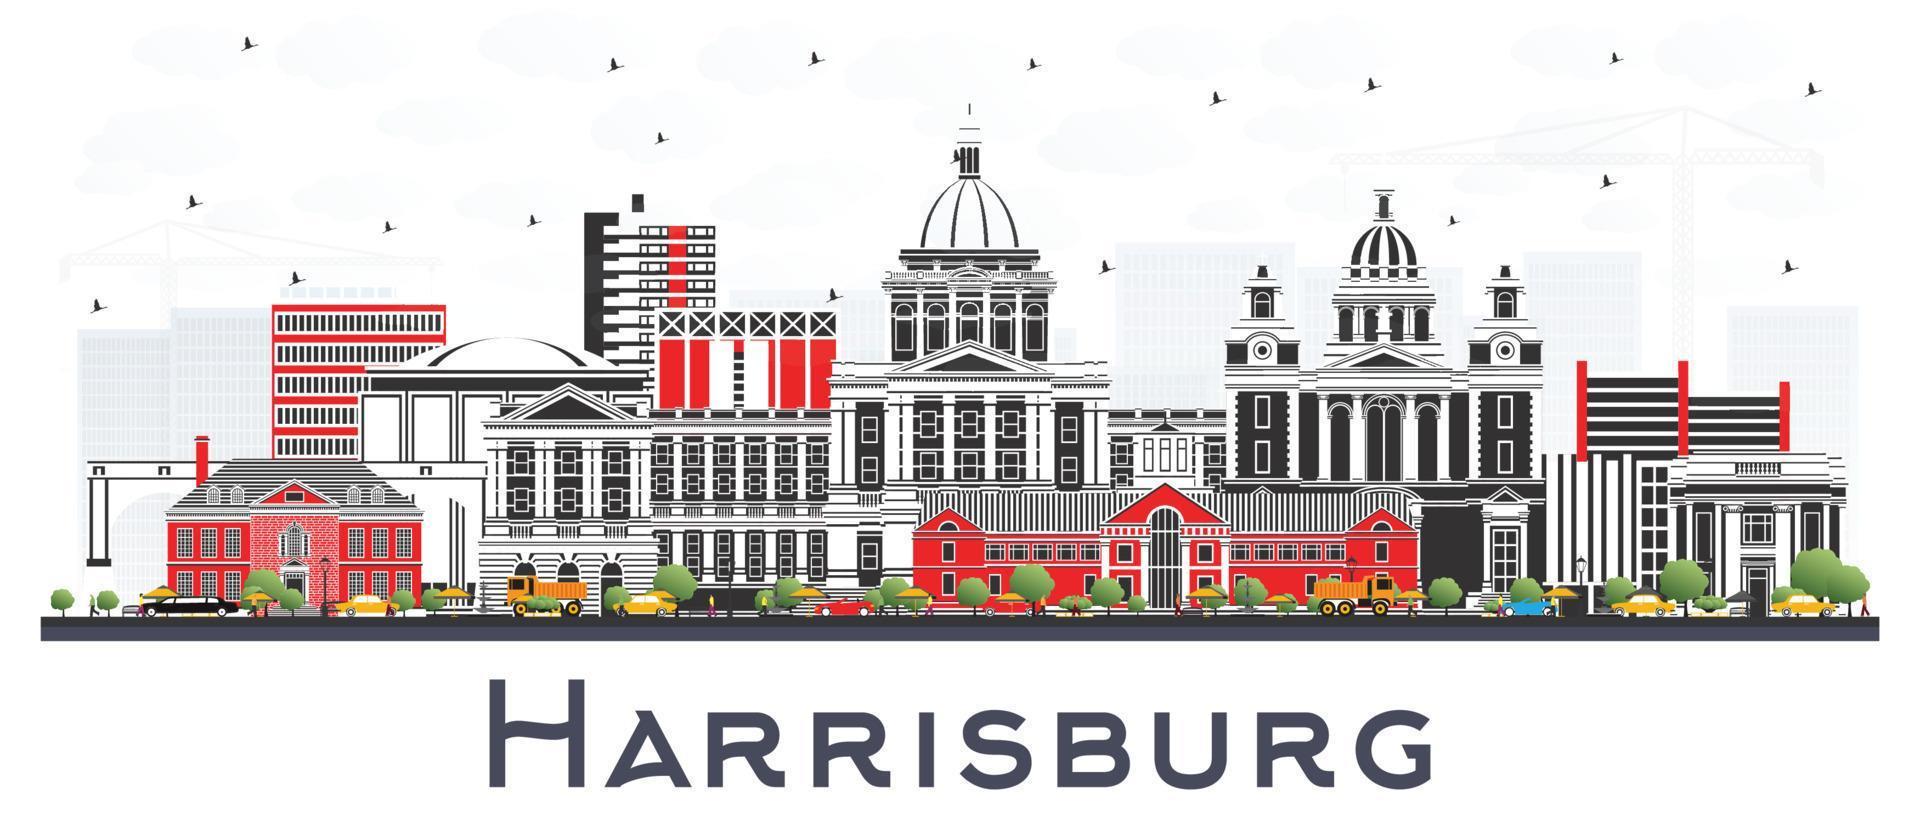 harrisburg pennsylvania city skyline mit farbigen gebäuden isoliert auf weiß. vektor